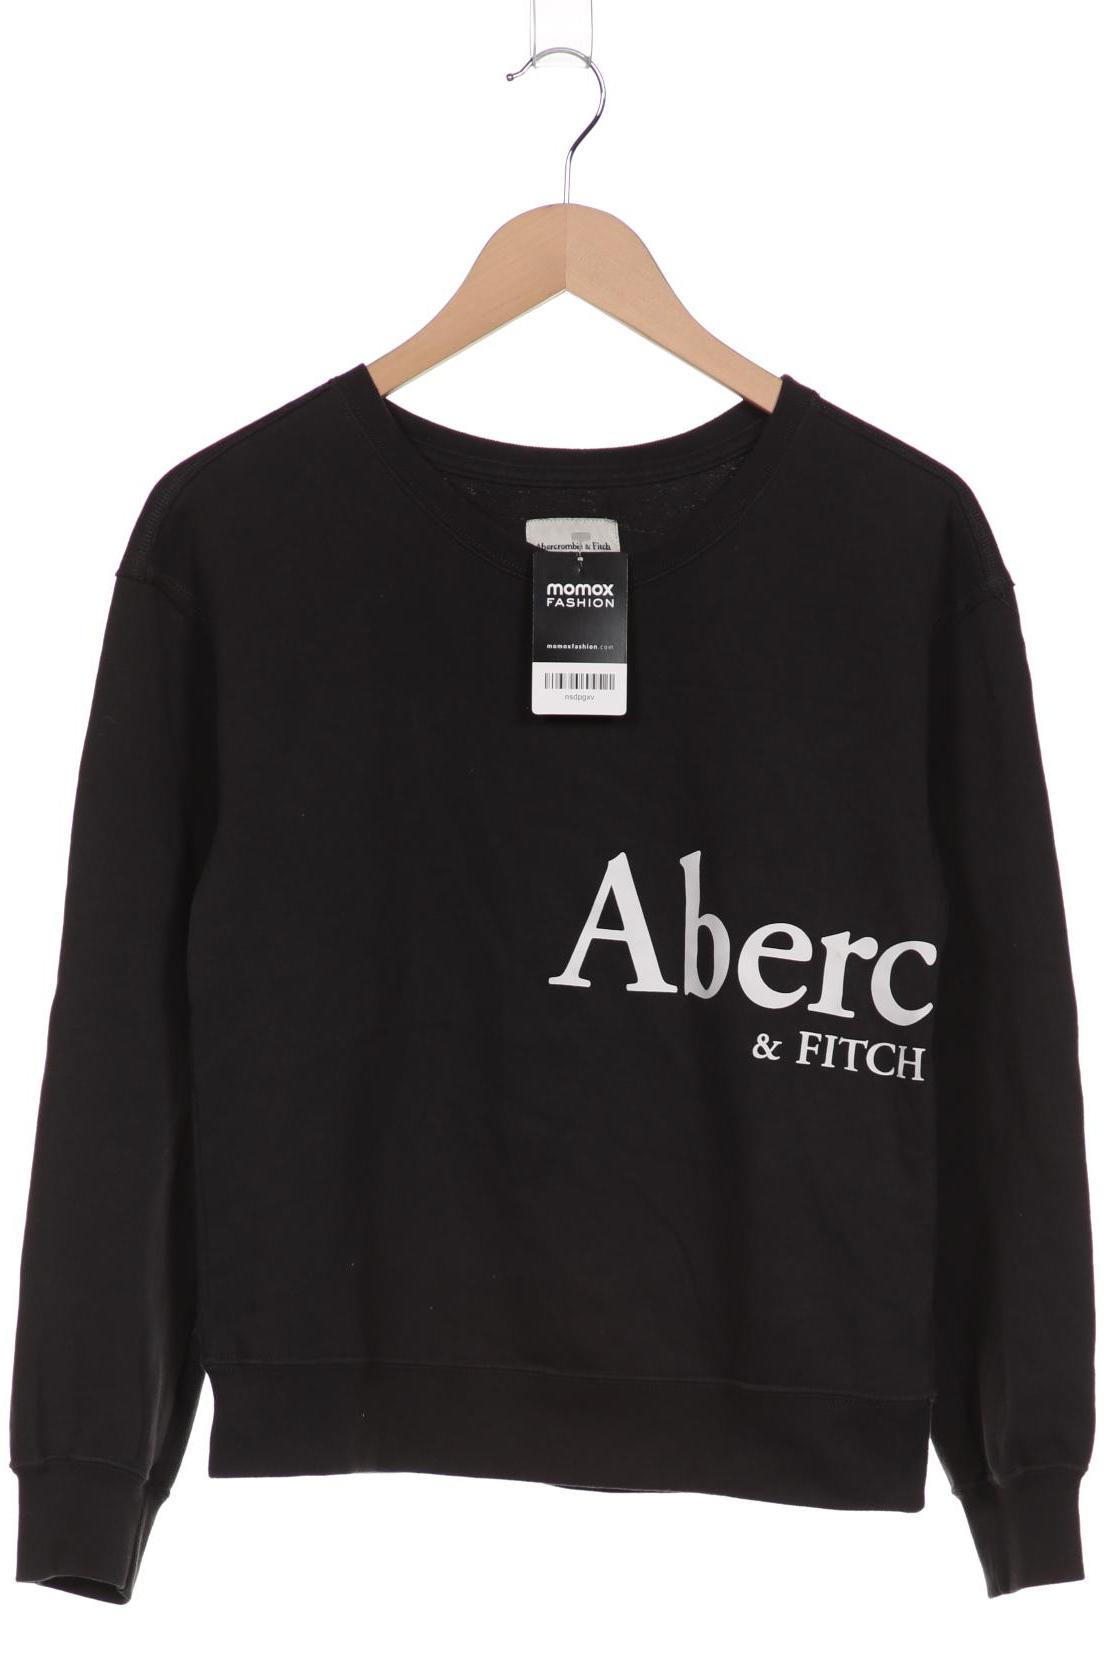 Abercrombie & Fitch Damen Sweatshirt, schwarz von Abercrombie & Fitch